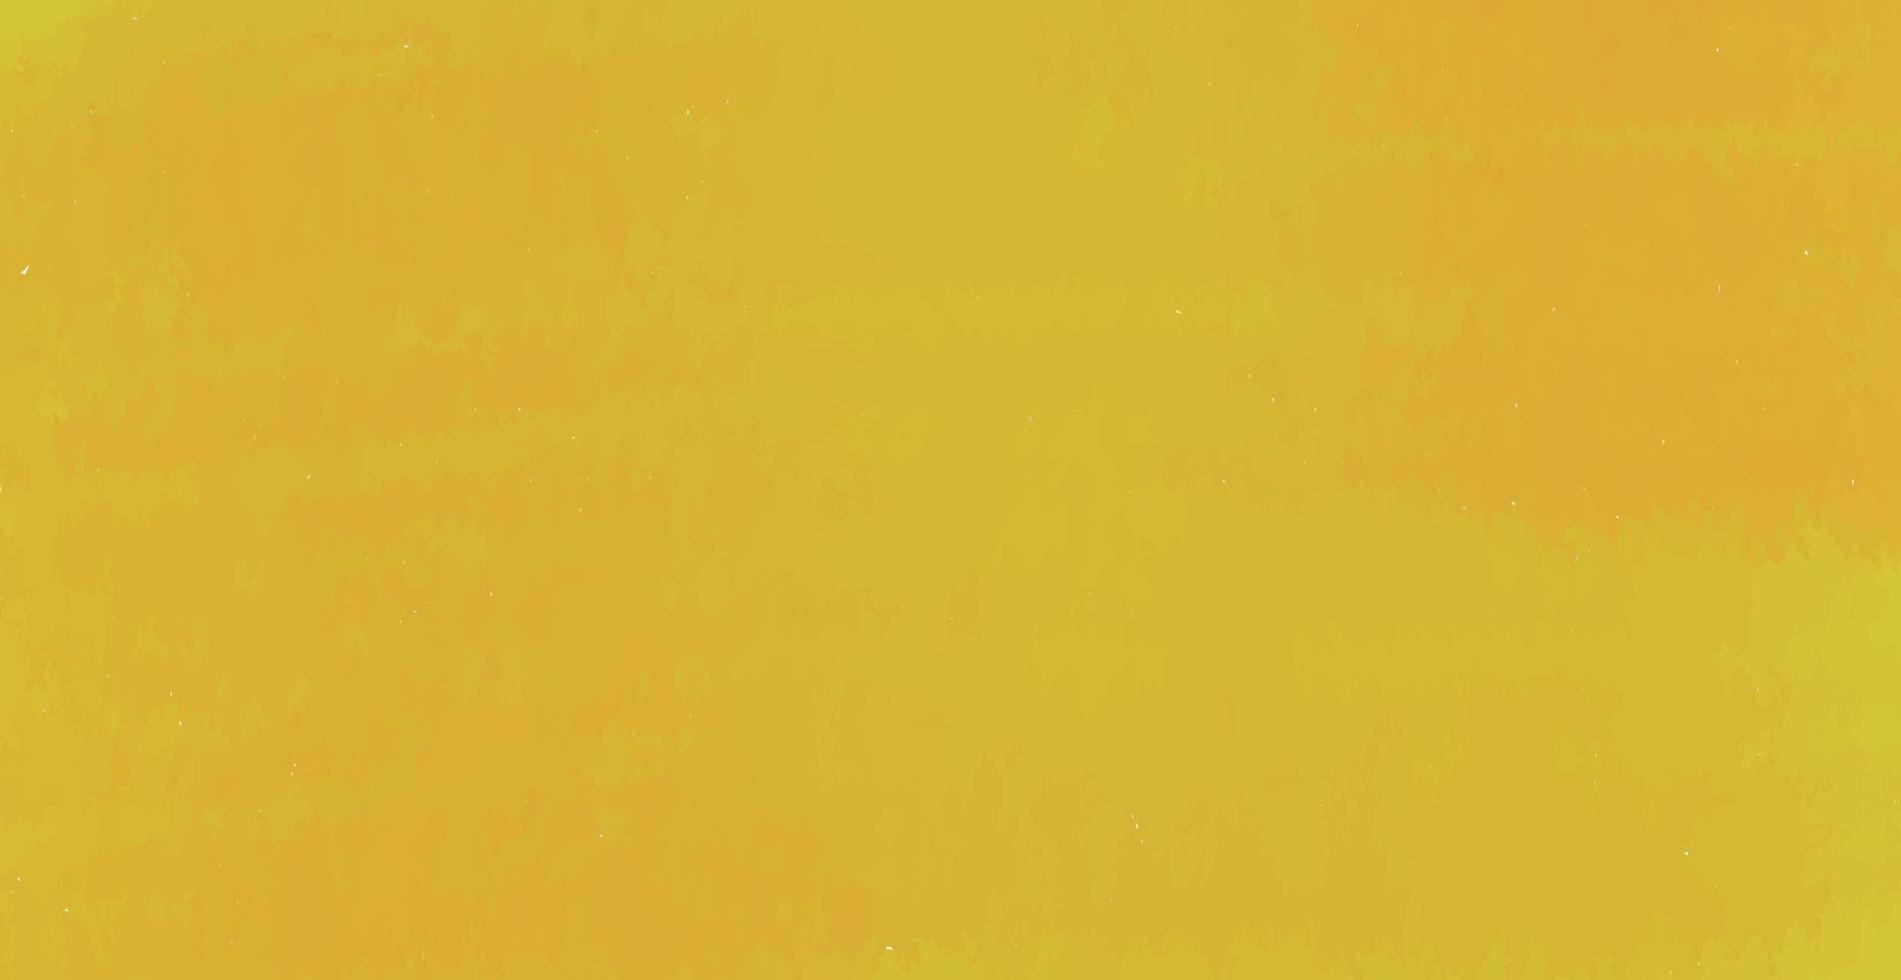 Panorama gelb orange Textur Abstract Grunge hintergrund - Vektor